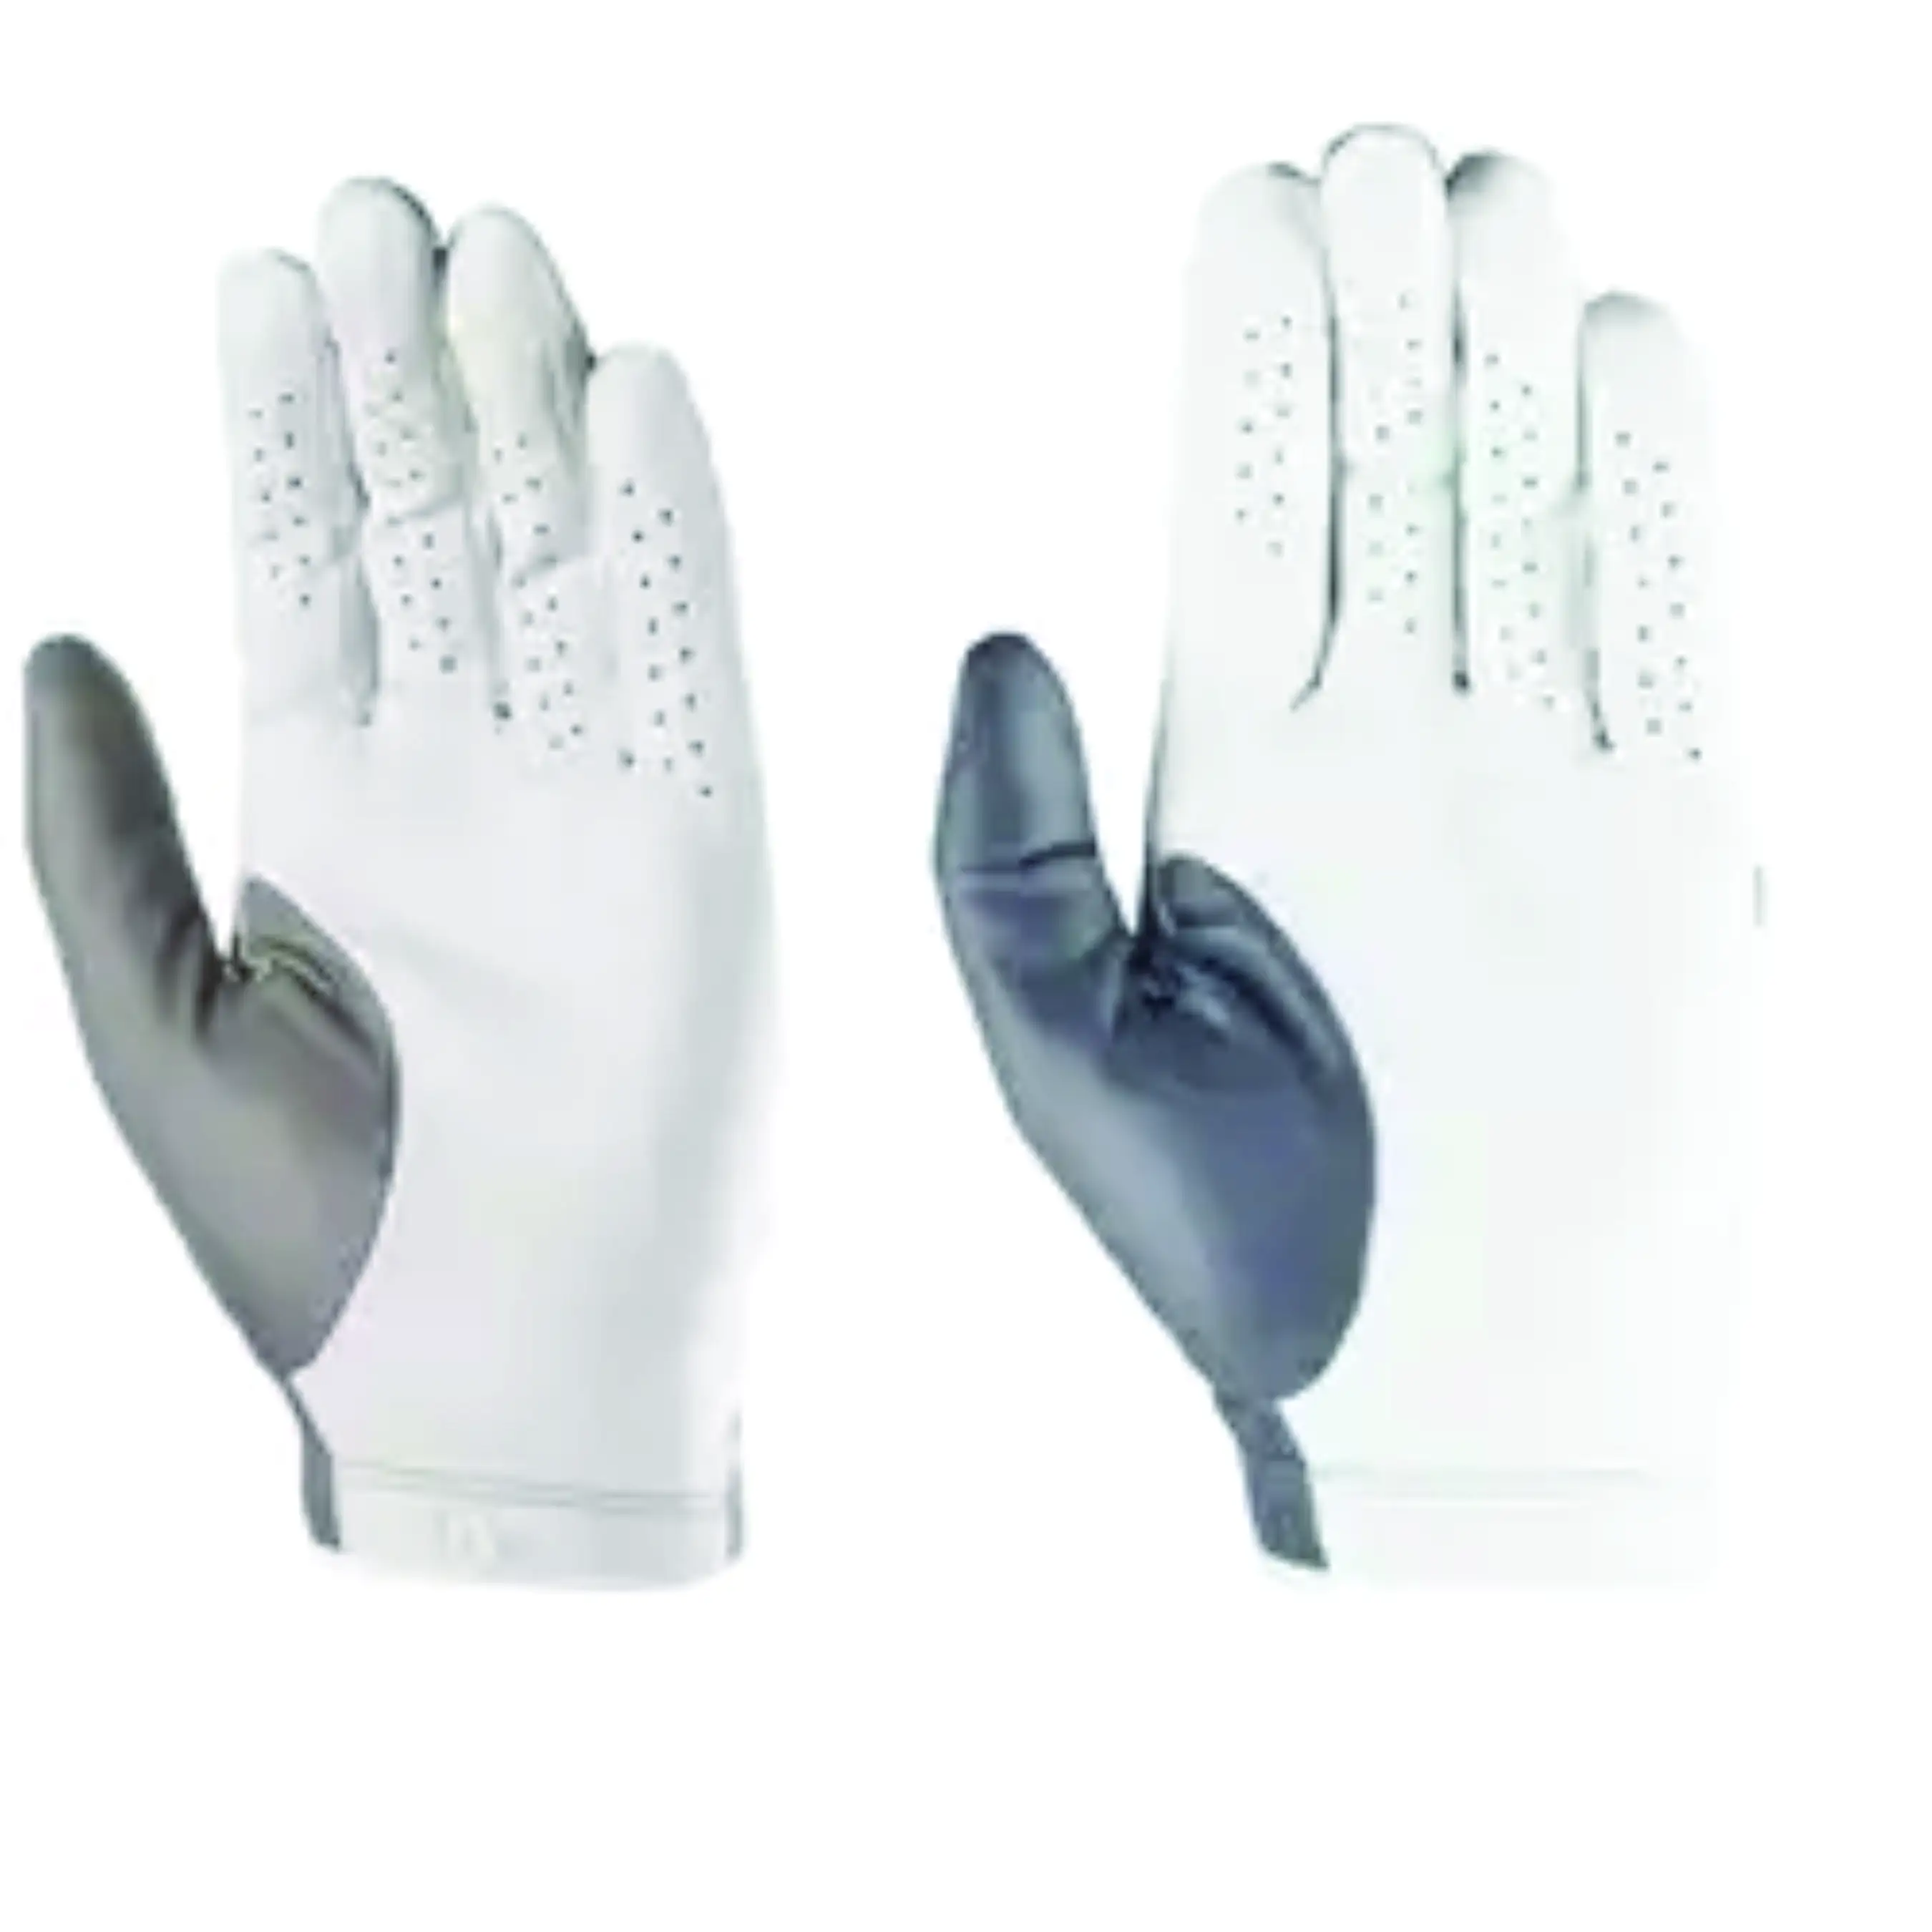 Cuero especializado y de alta calidad y buenos guantes de golf sublimados de Pakistán con productos de alta calidad a precios muy baratos